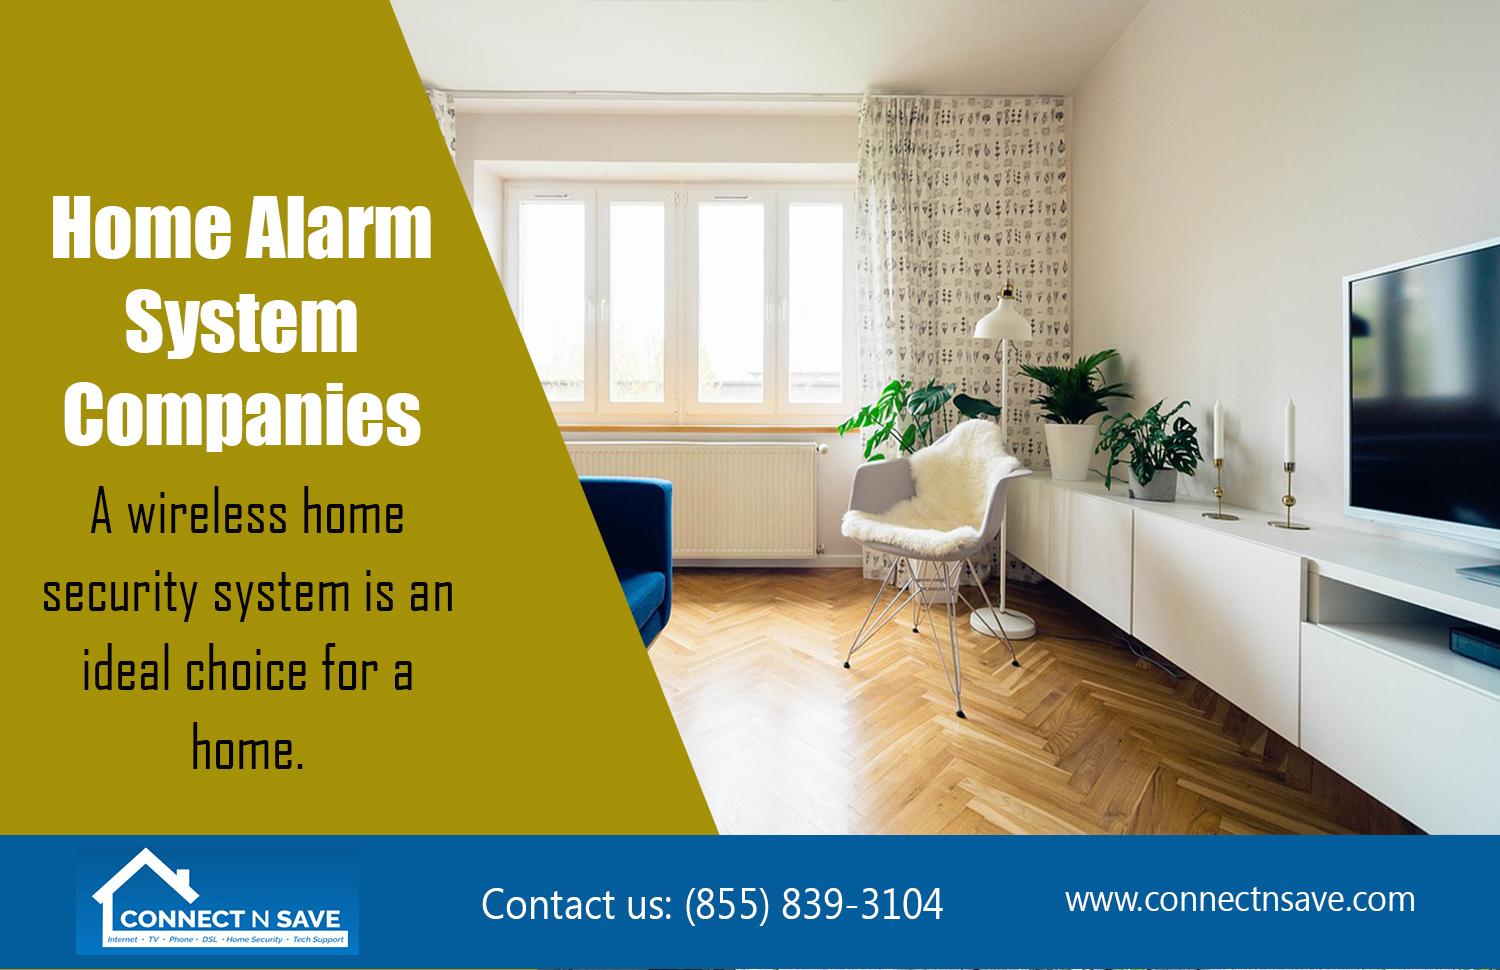 Home Alarm System Companies | http://connectnsave.com/